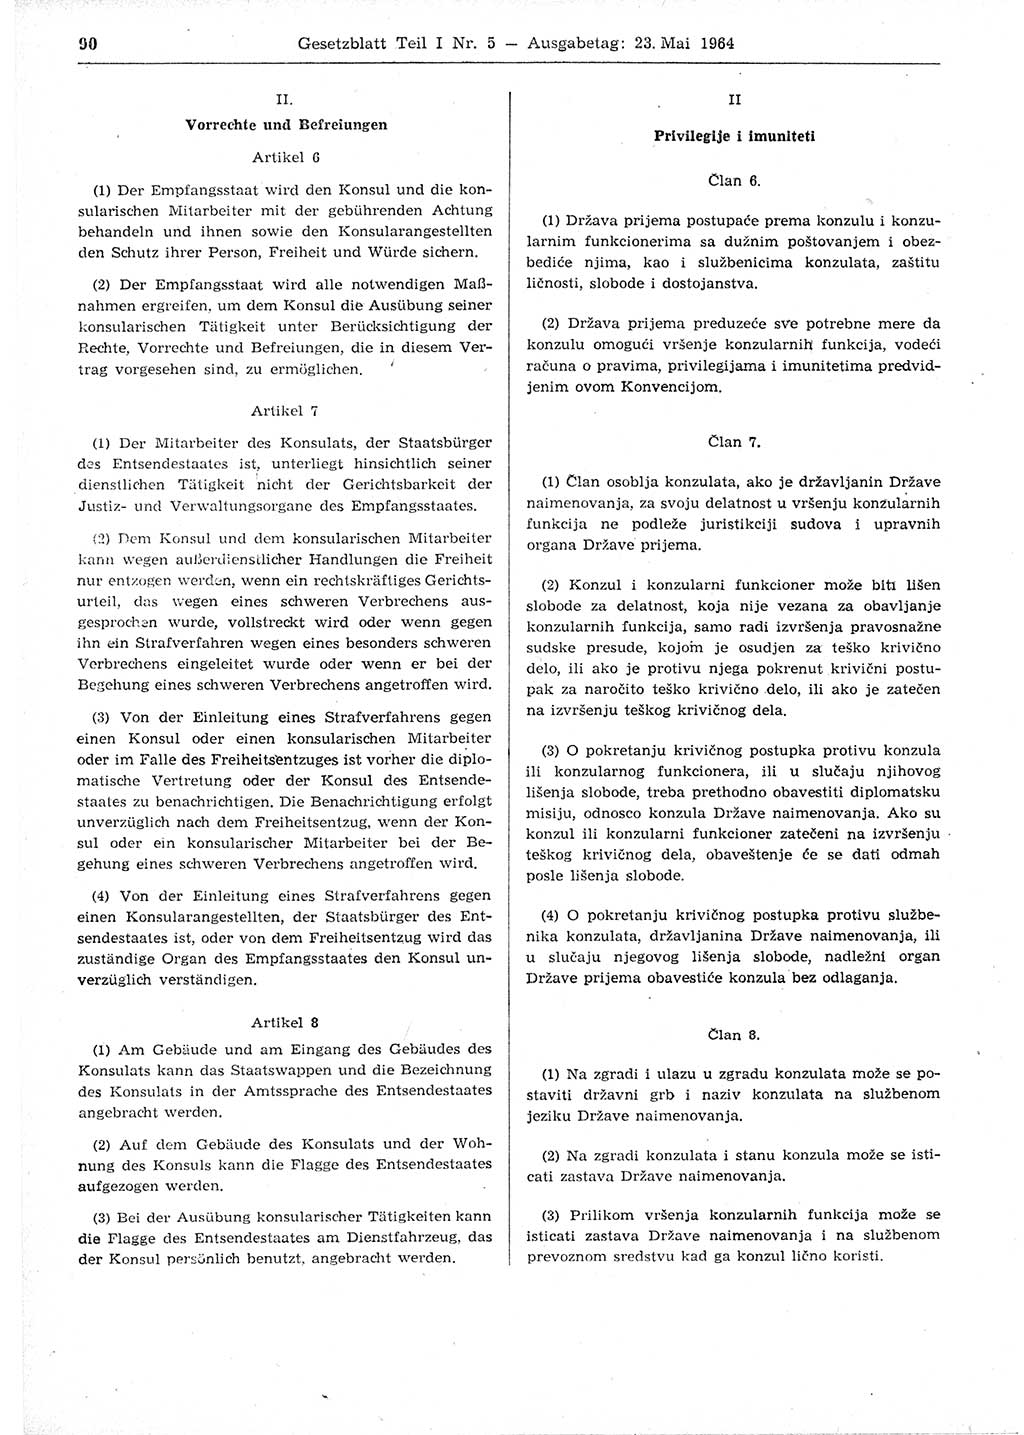 Gesetzblatt (GBl.) der Deutschen Demokratischen Republik (DDR) Teil Ⅰ 1964, Seite 90 (GBl. DDR Ⅰ 1964, S. 90)